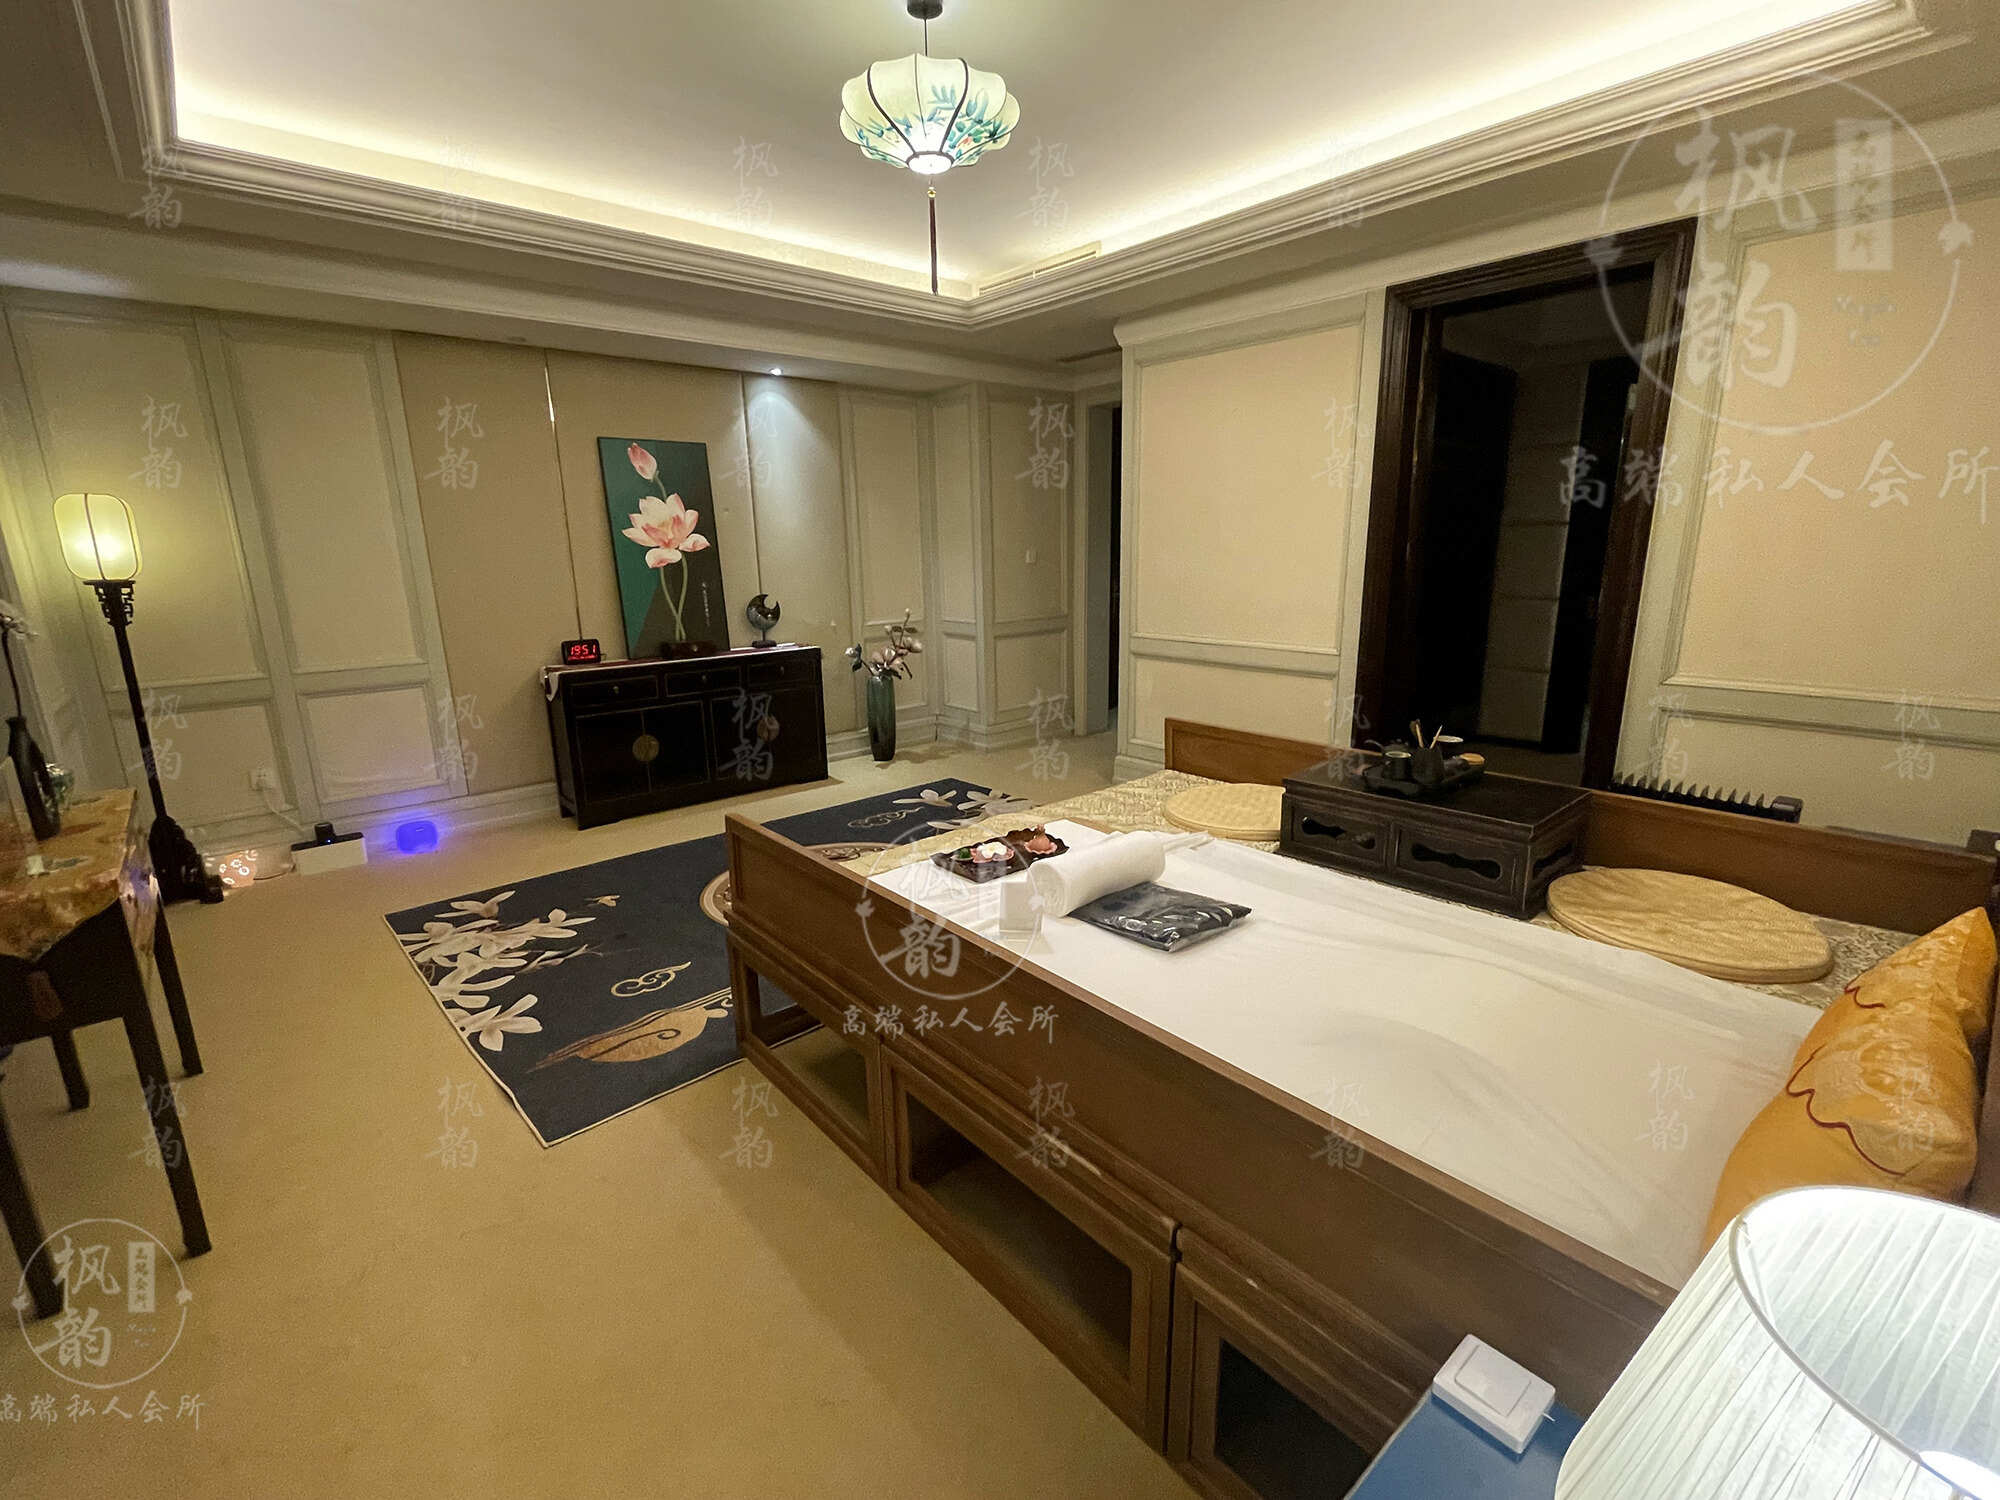 山西天津渔阳鼓楼人气优选沐足会馆房间也很干净，舒适的spa体验